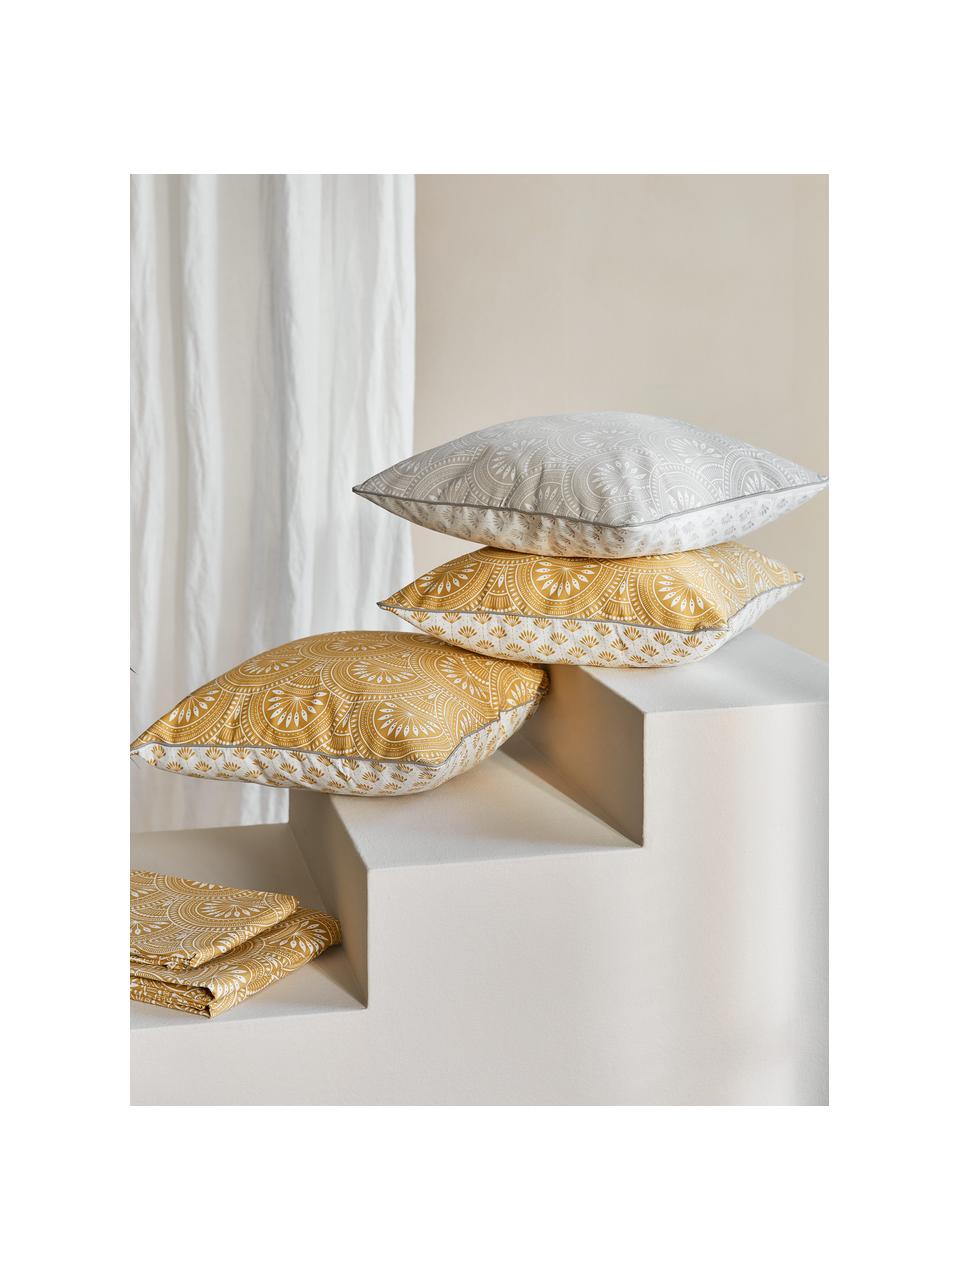 Dwustronna poszewka na poduszkę z bawełny organicznej Tiara, 100% bawełna organiczna, certyfikat GOTS, Jasny szary & biały, we wzór, S 45 x D 45 cm